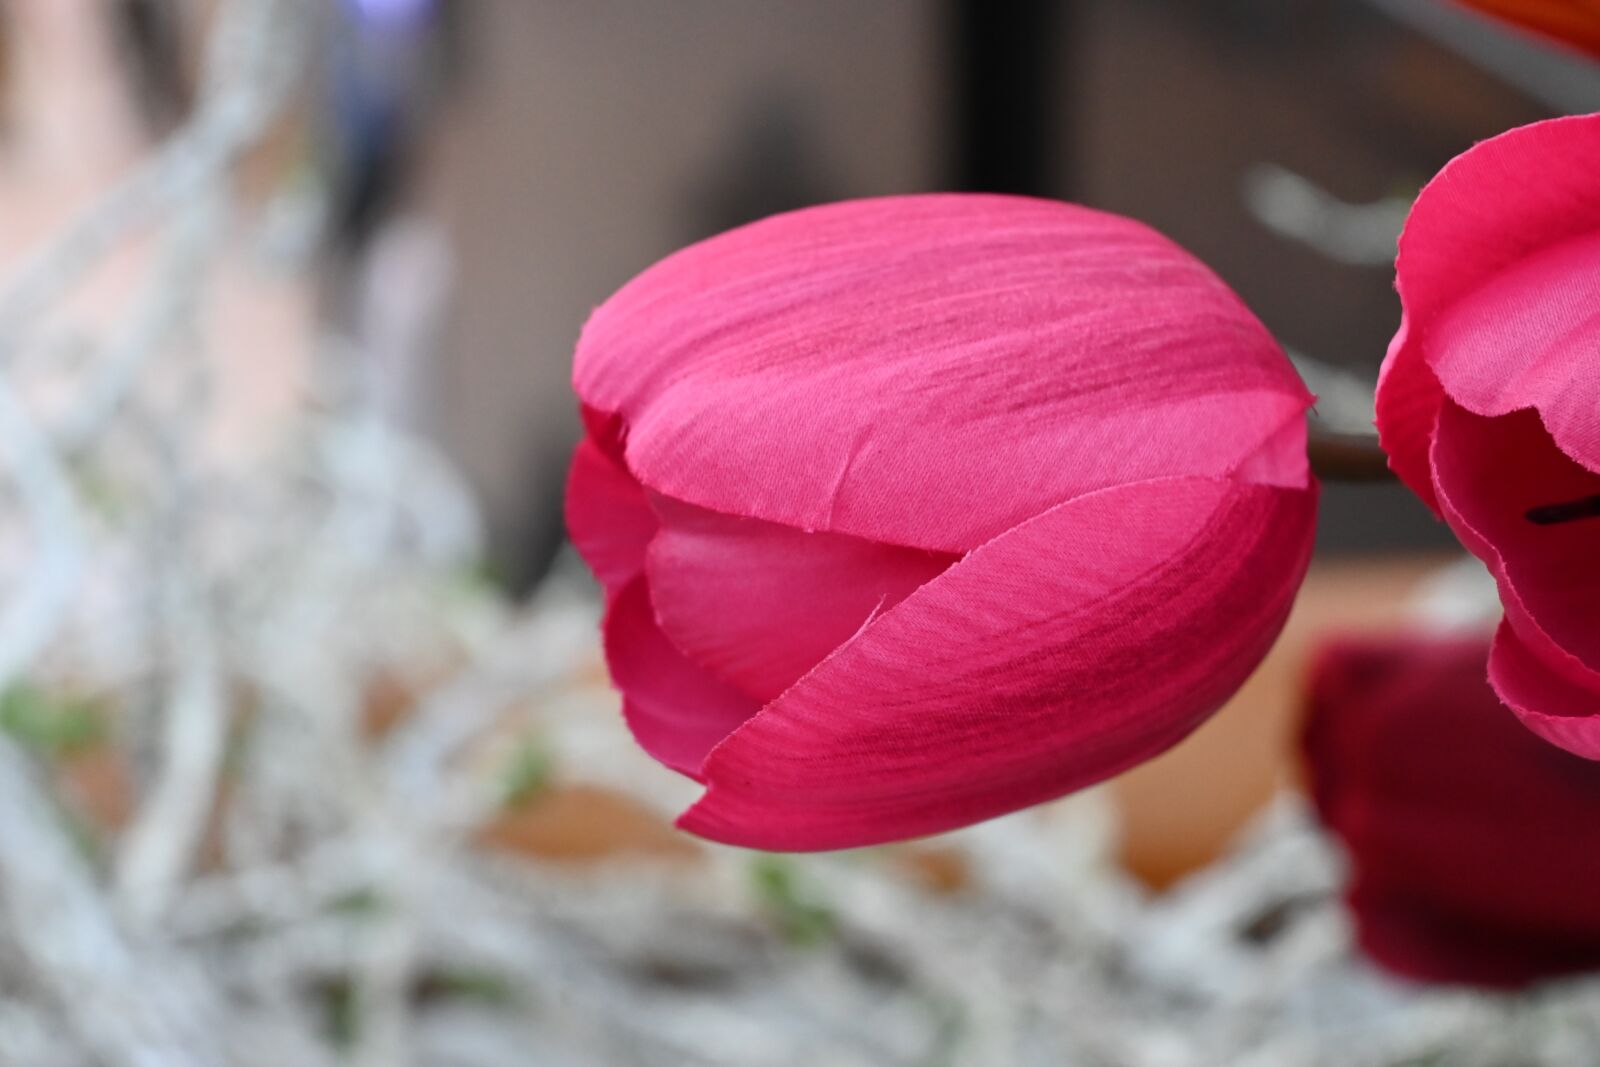 Nikon Z 50 sample photo. Tulip, dubai, garden photography